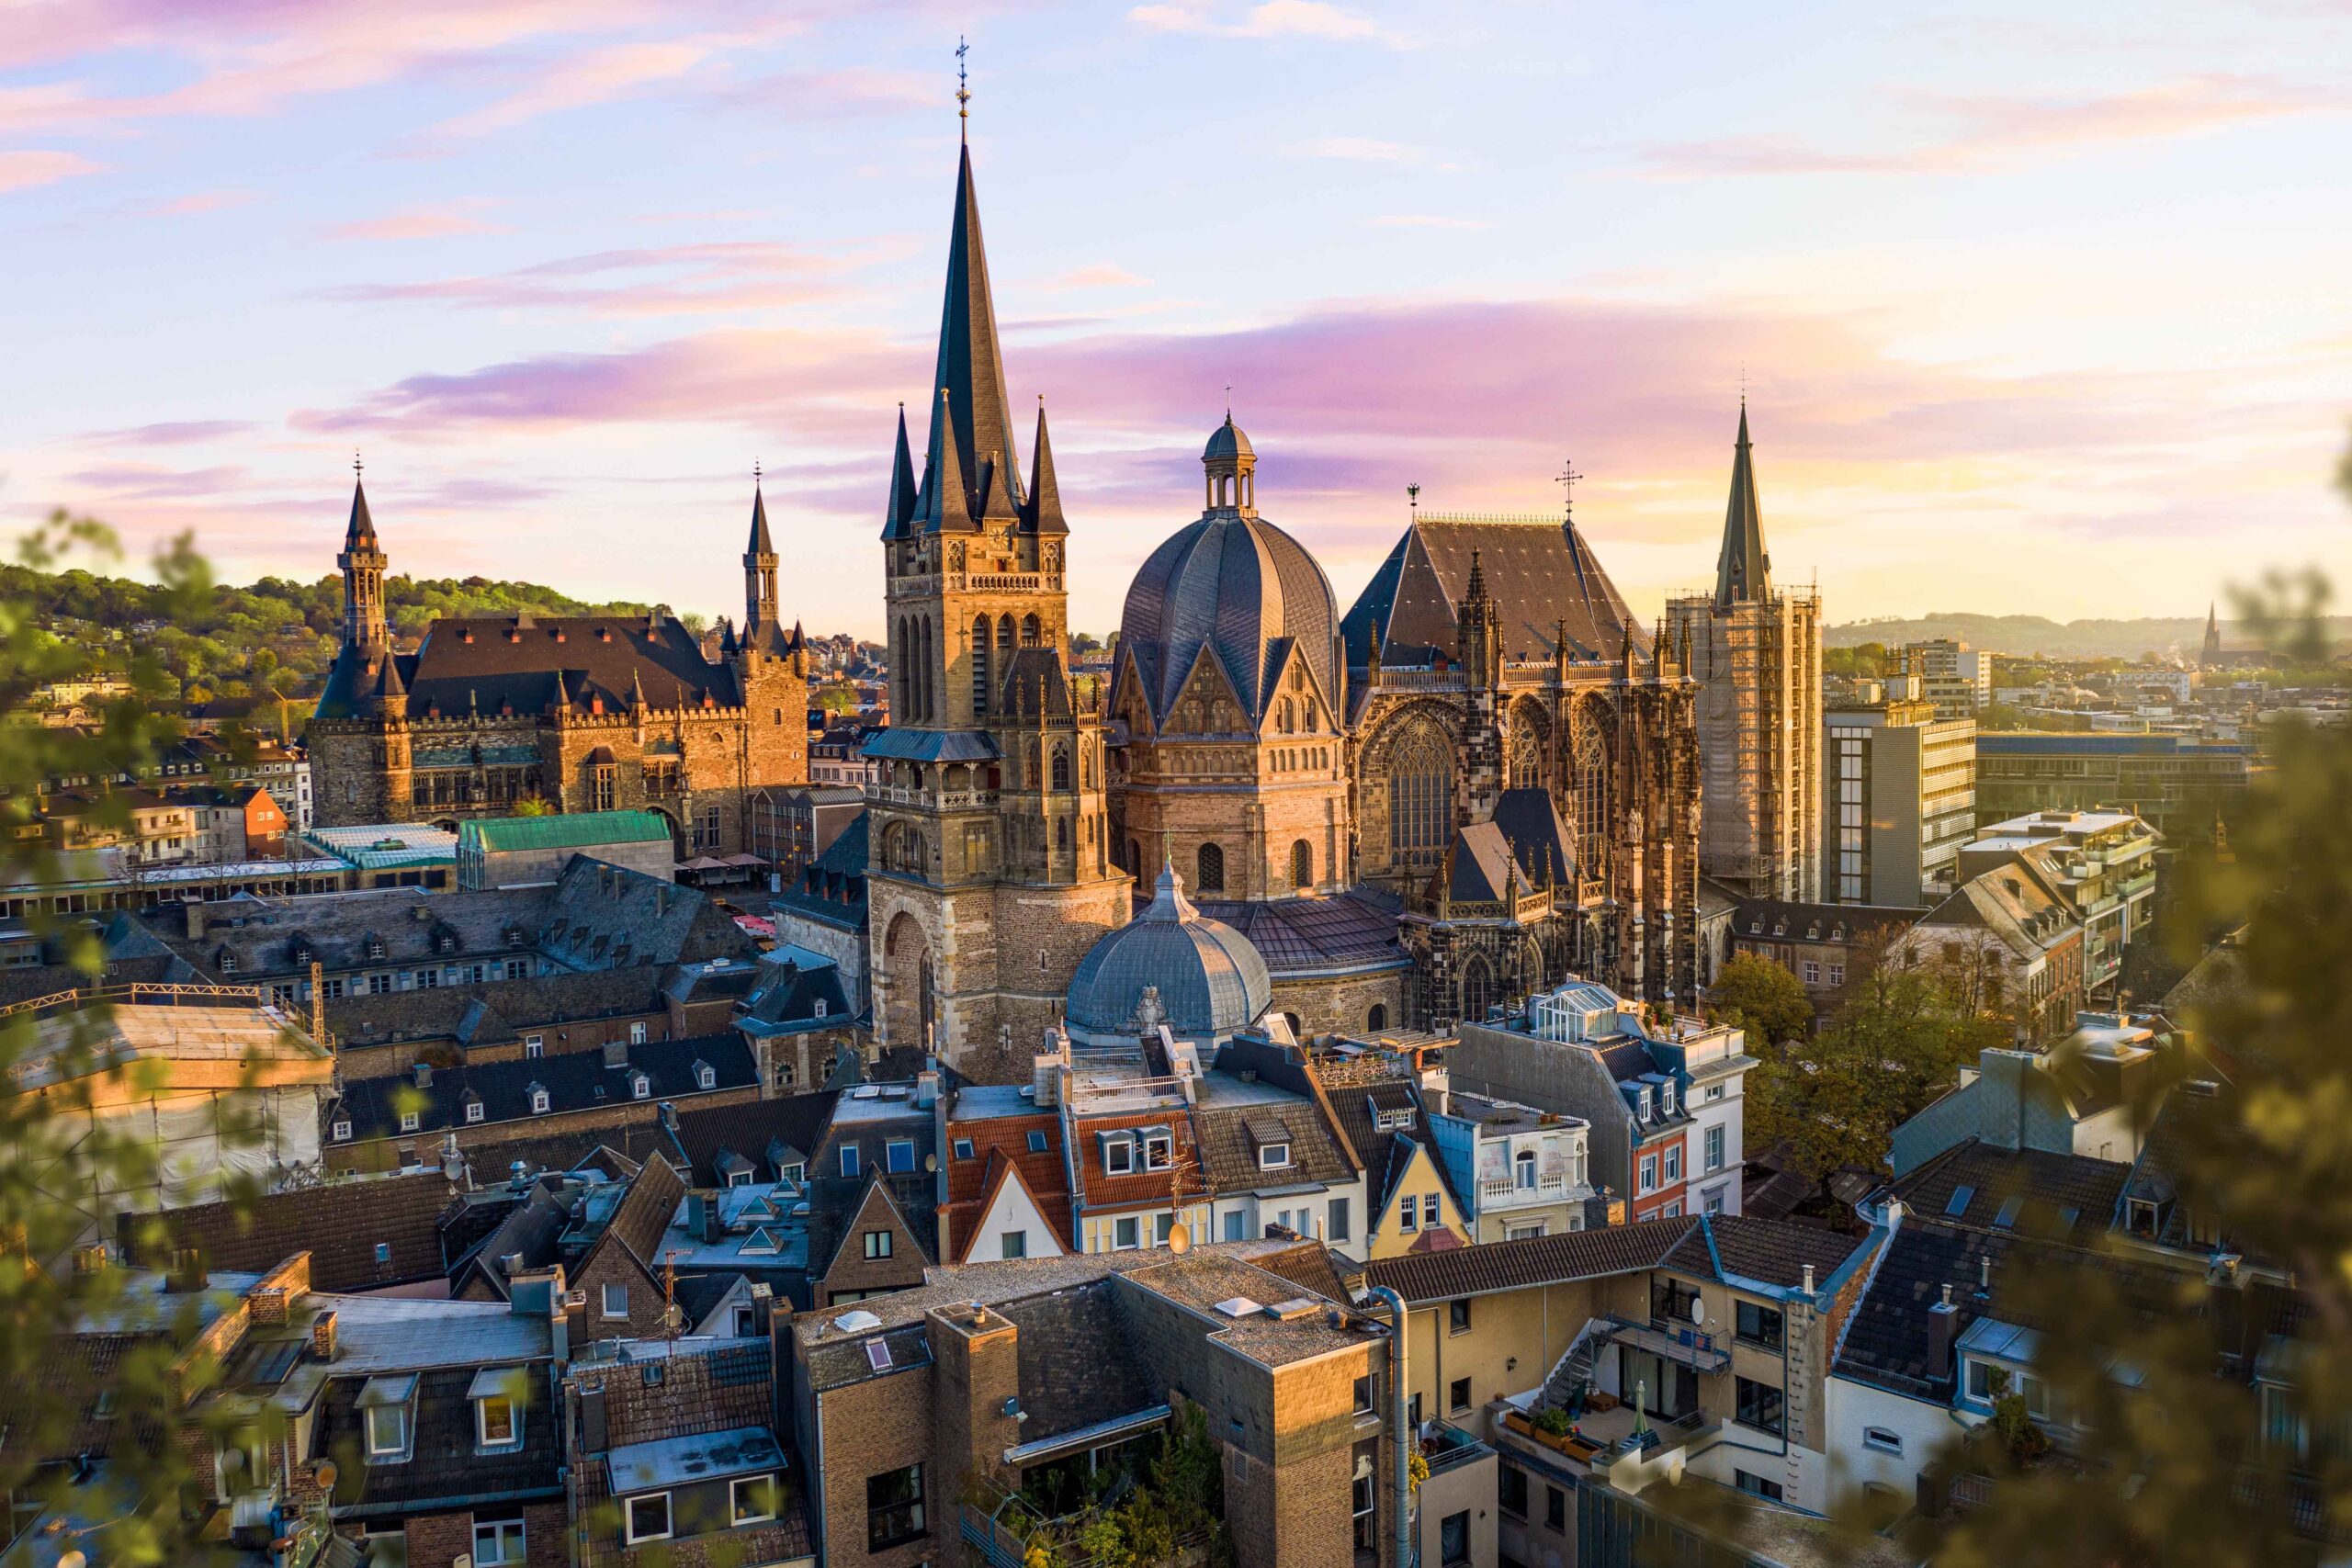 Die Innenstadt von Aachen in der Morgenröte mit dem Dom im Zentrum.